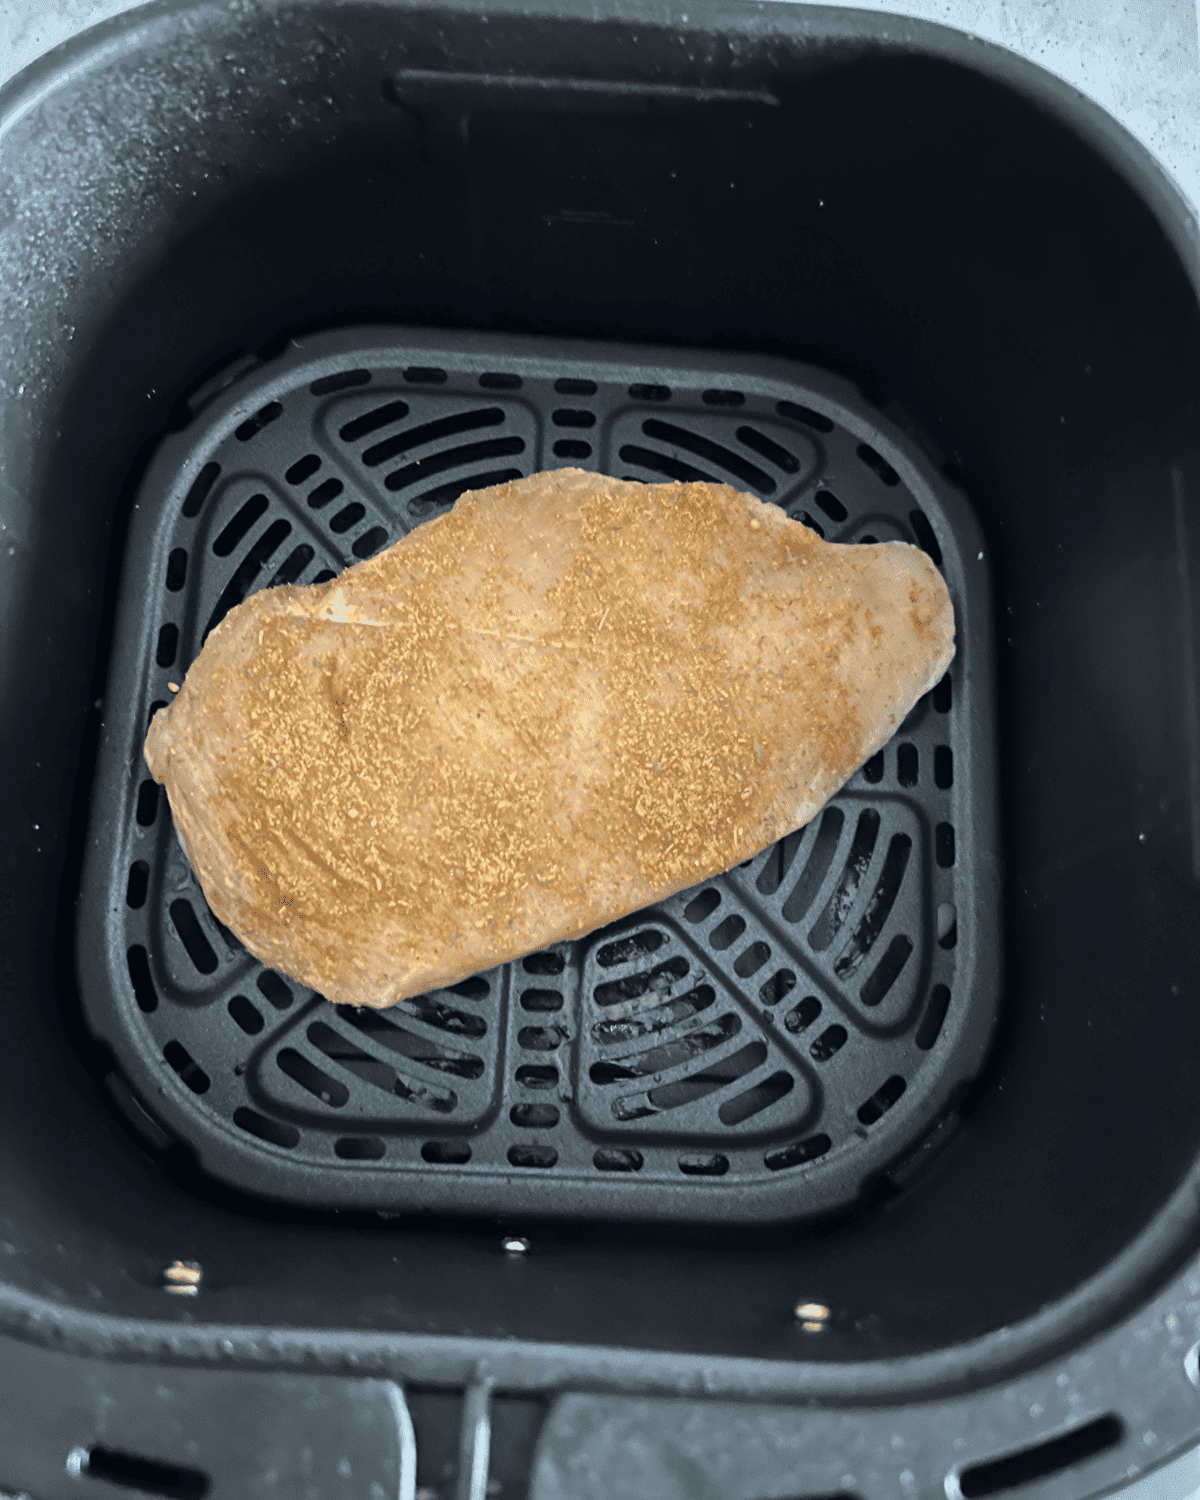 seasoned chicken breast in air fryer basket before cooking 